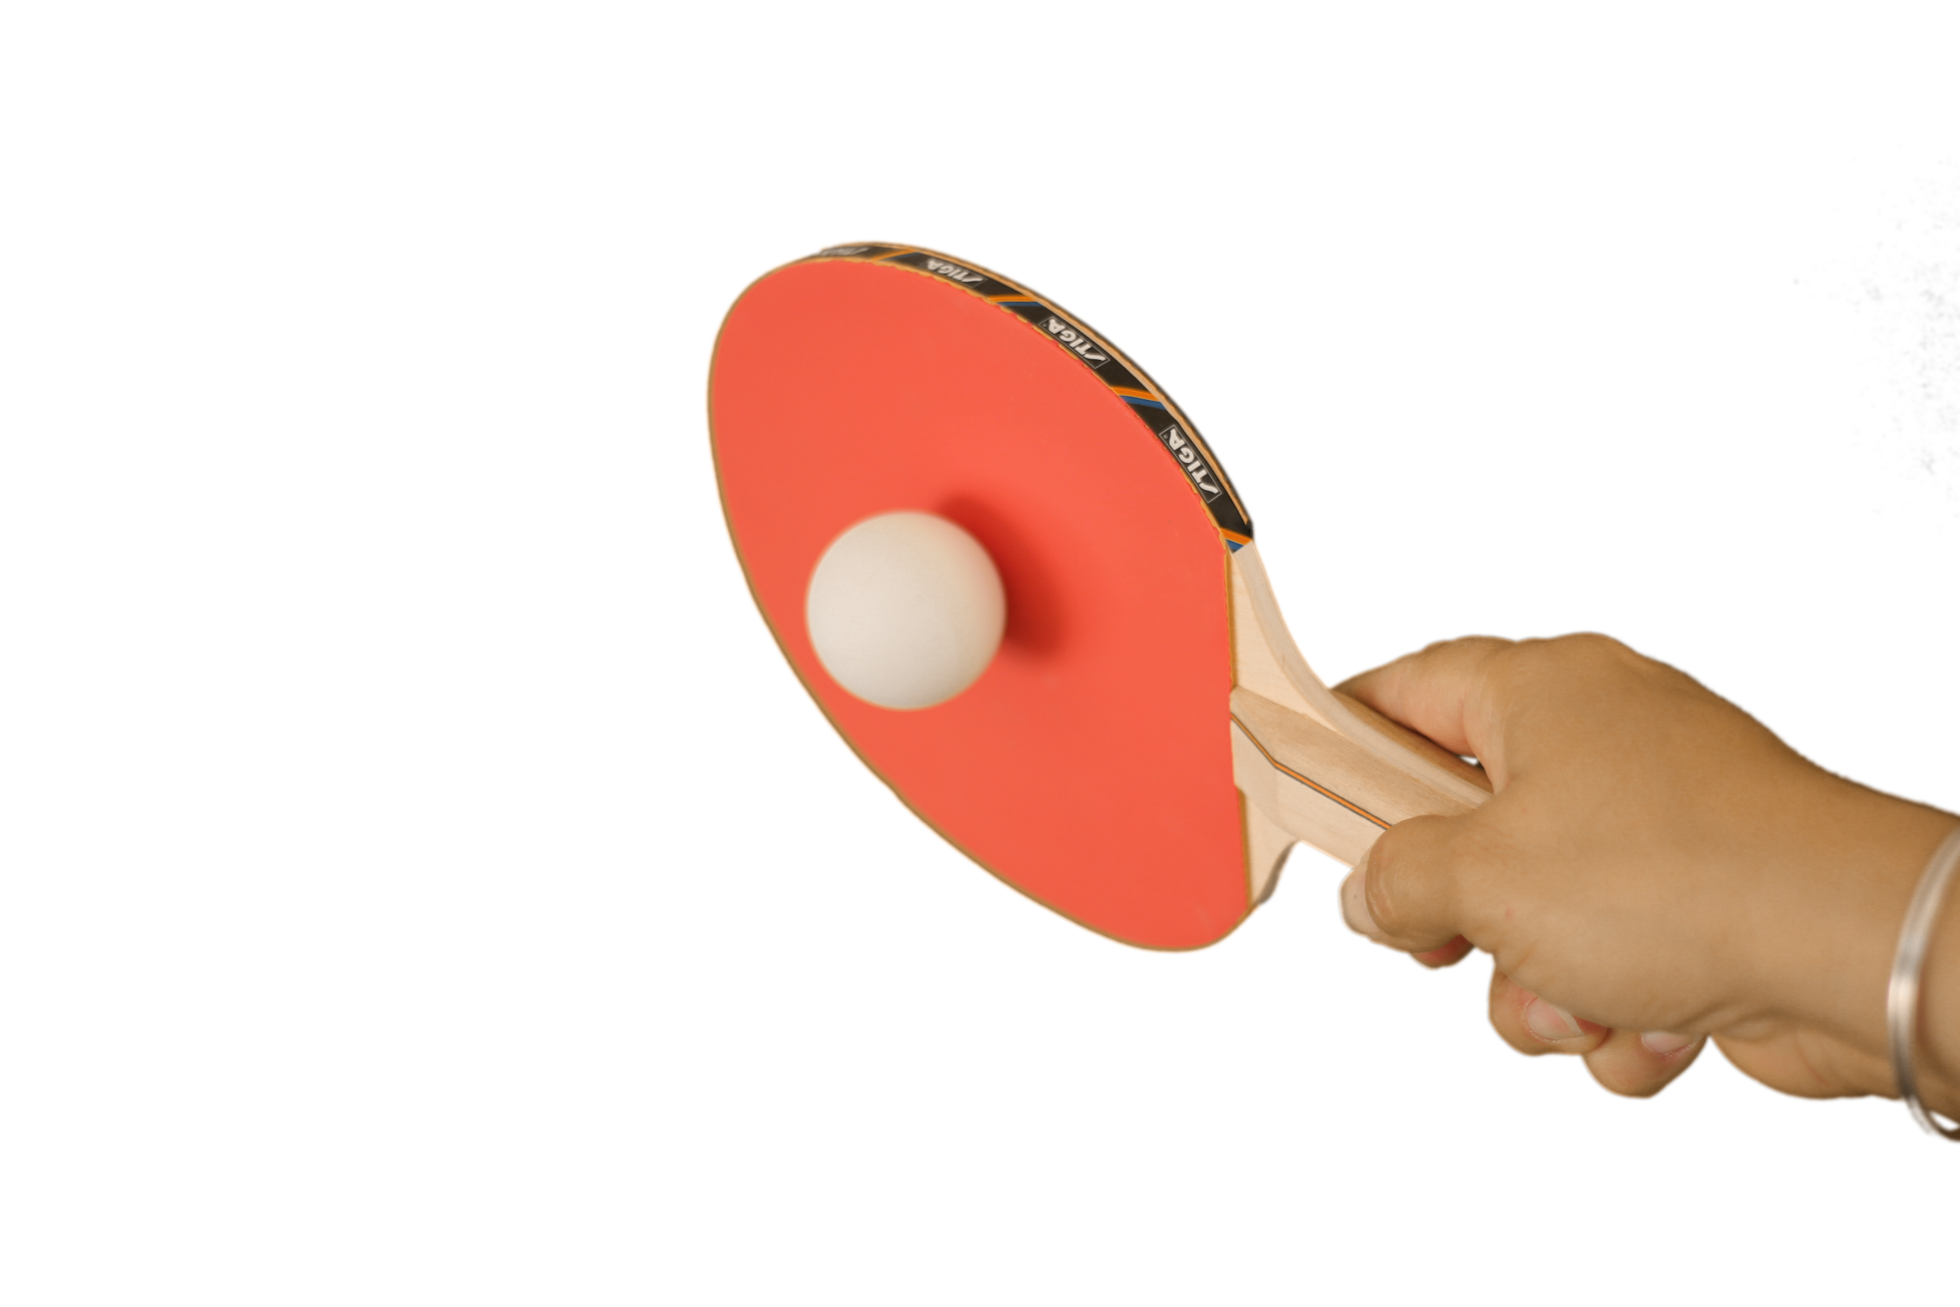 Racchetta da ping pong in mano